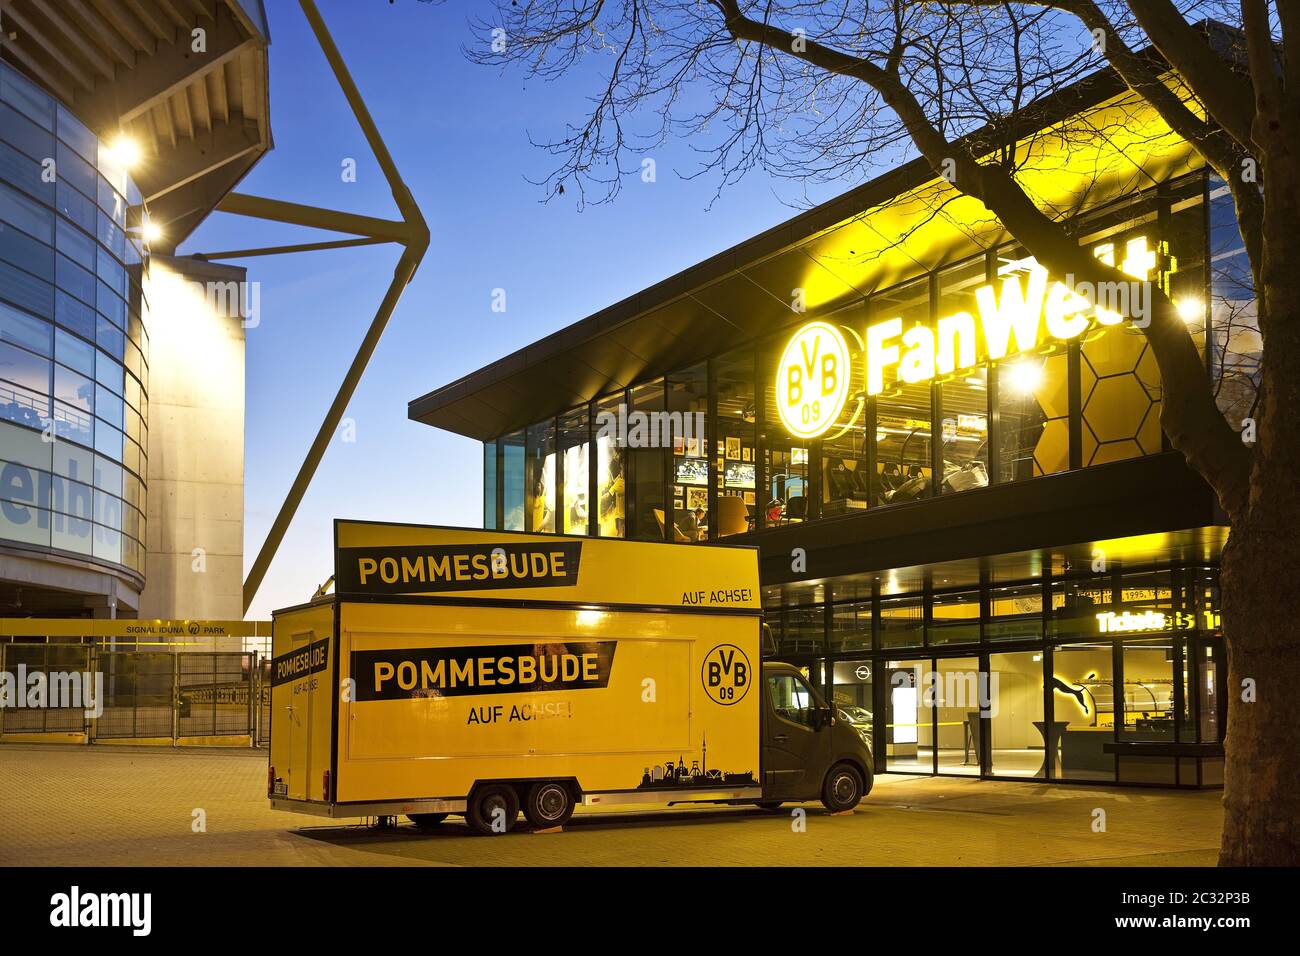 Borussia Dortmund Fanshop im Signal Iduna Park mit Pommesbude, Dortmund, Deutschland, Europa Stockfoto